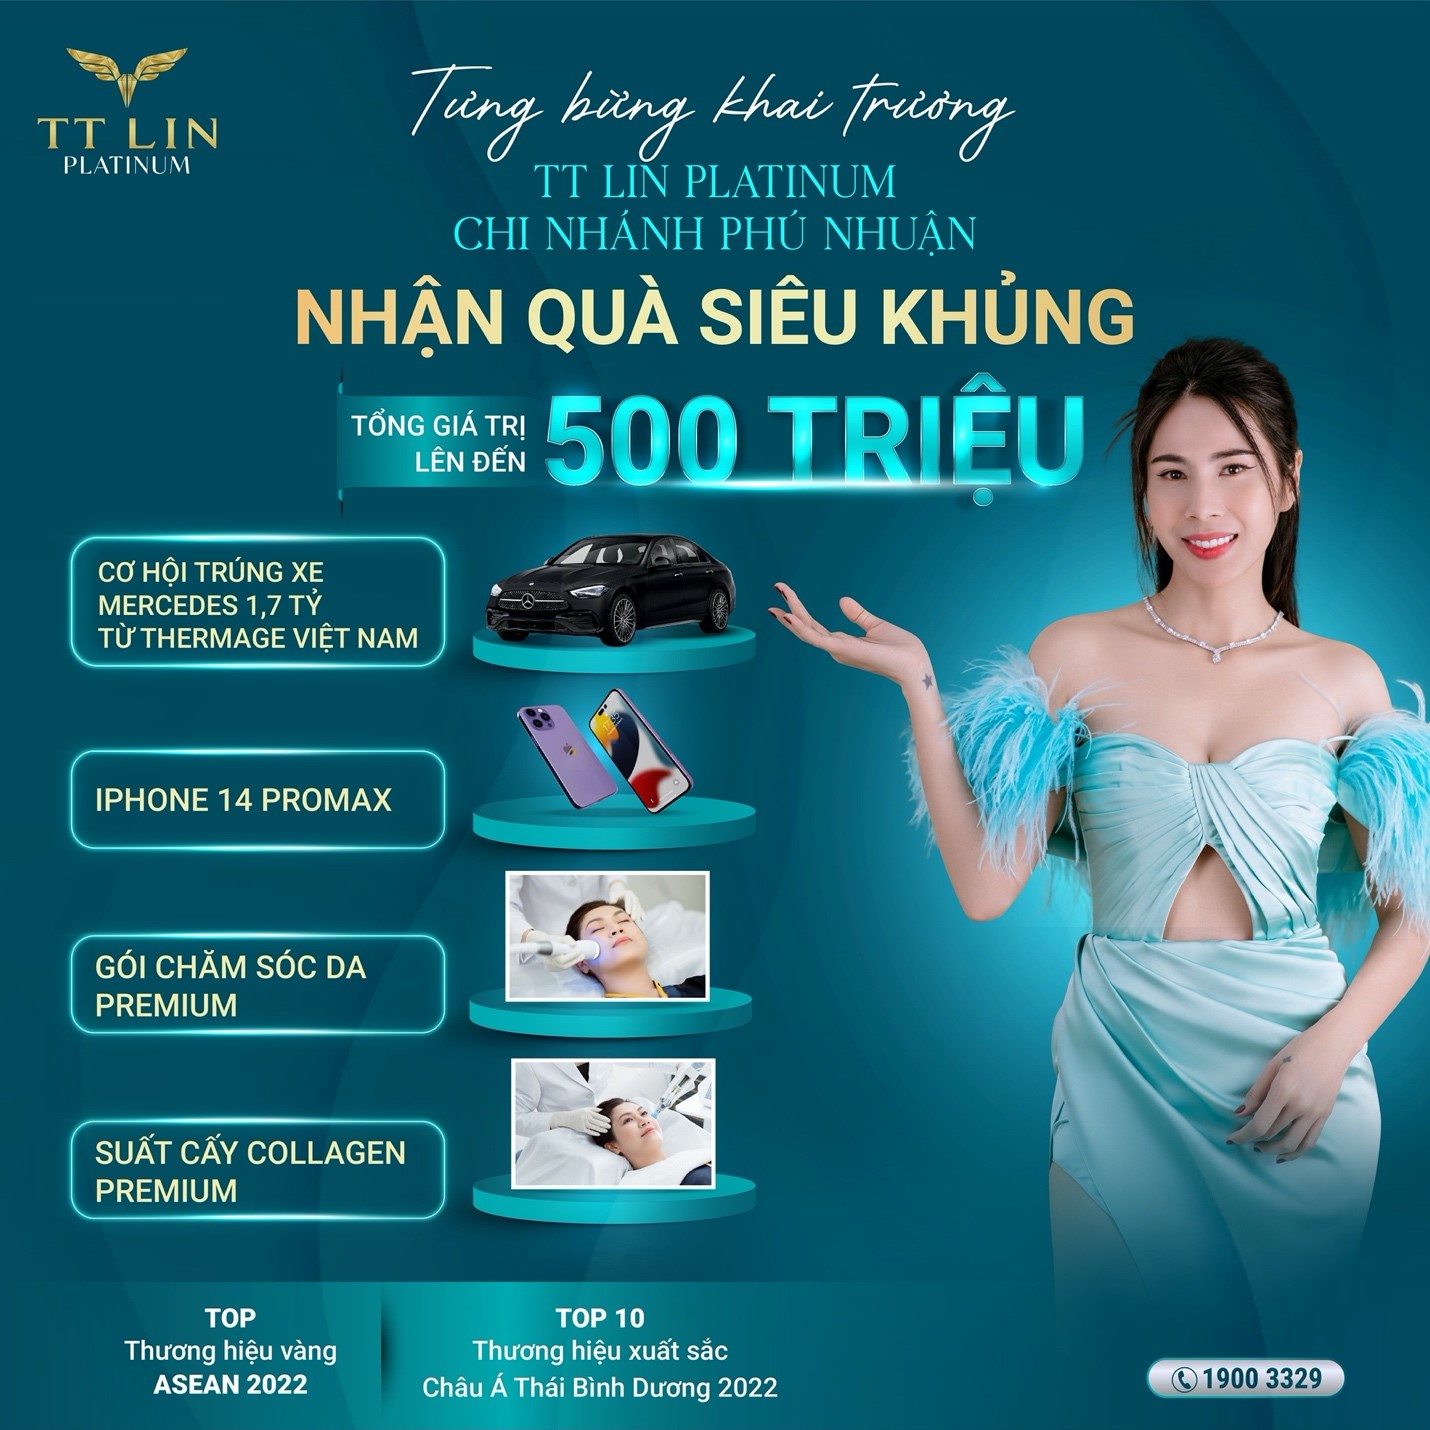 Thương hiệu làm đẹp TT Lin Platinum khai trương chi nhánh thứ 8 tại Phú Nhuận, TP Hồ Chí Minh - ảnh 5